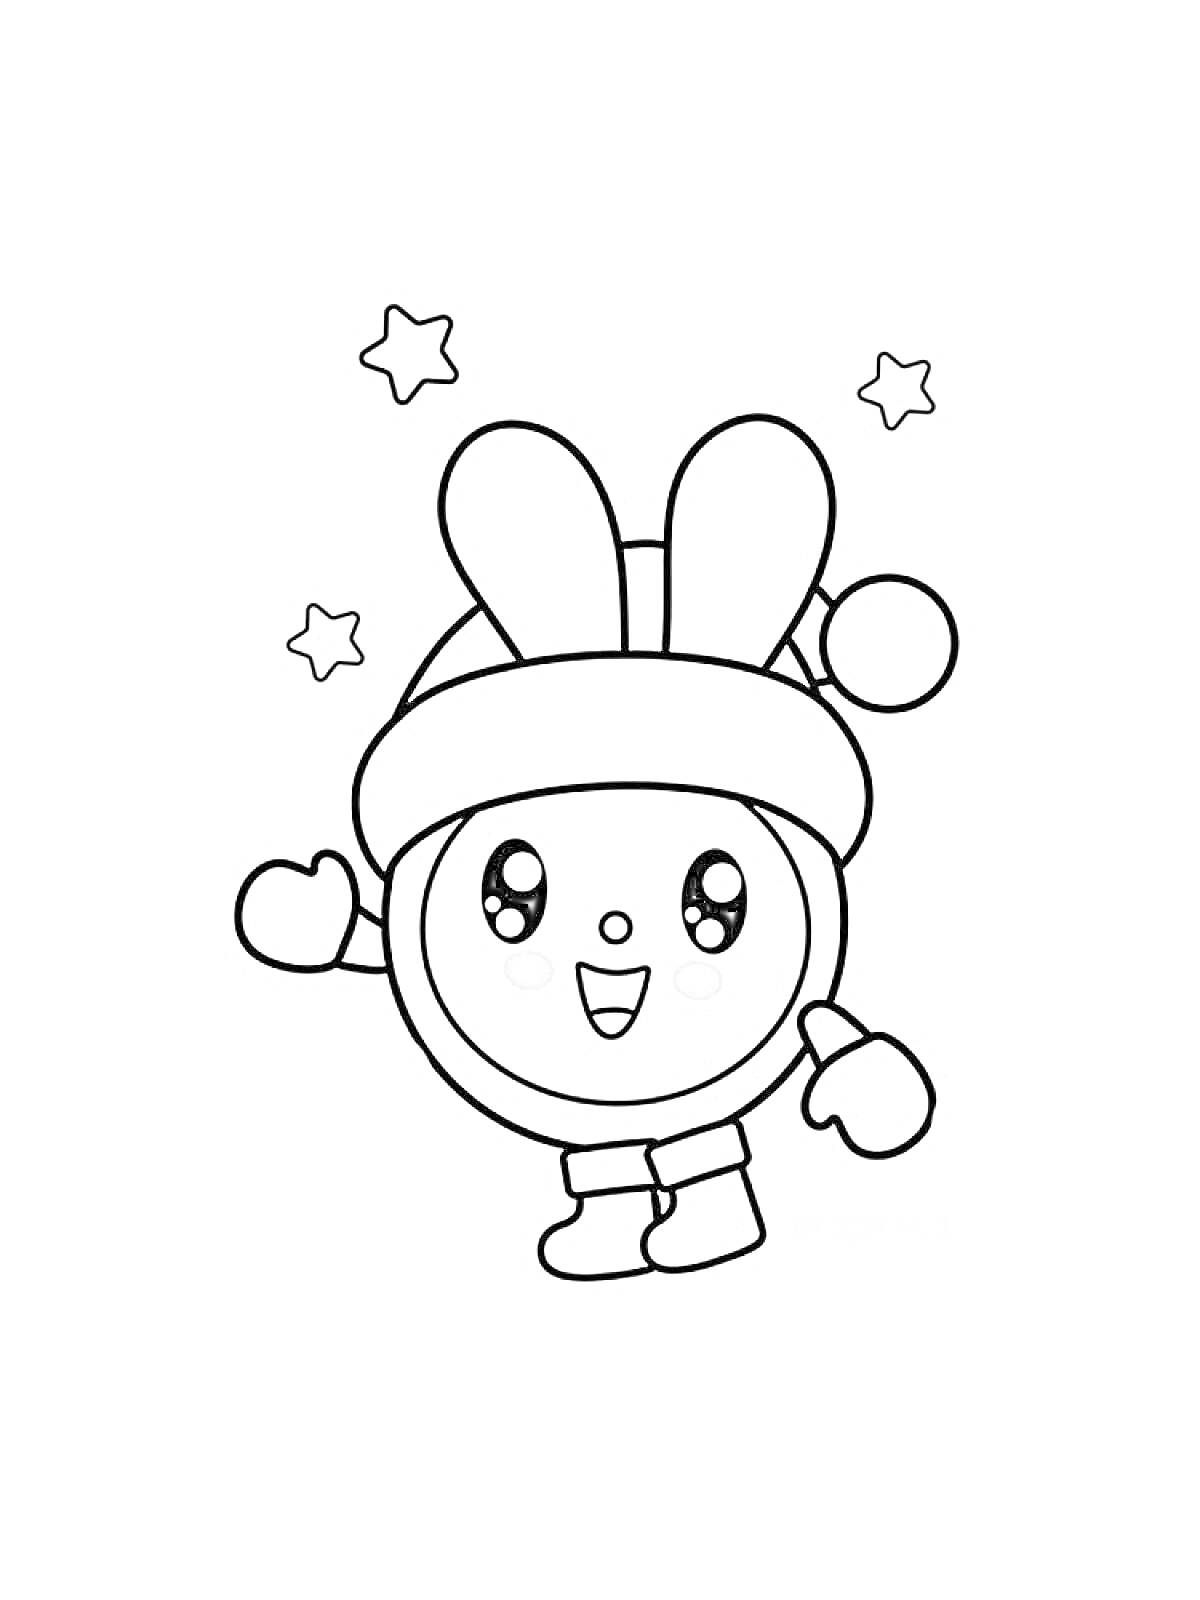 Раскраска Малышарик с ушками в шапке, с поднятой рукой и звёздами вокруг